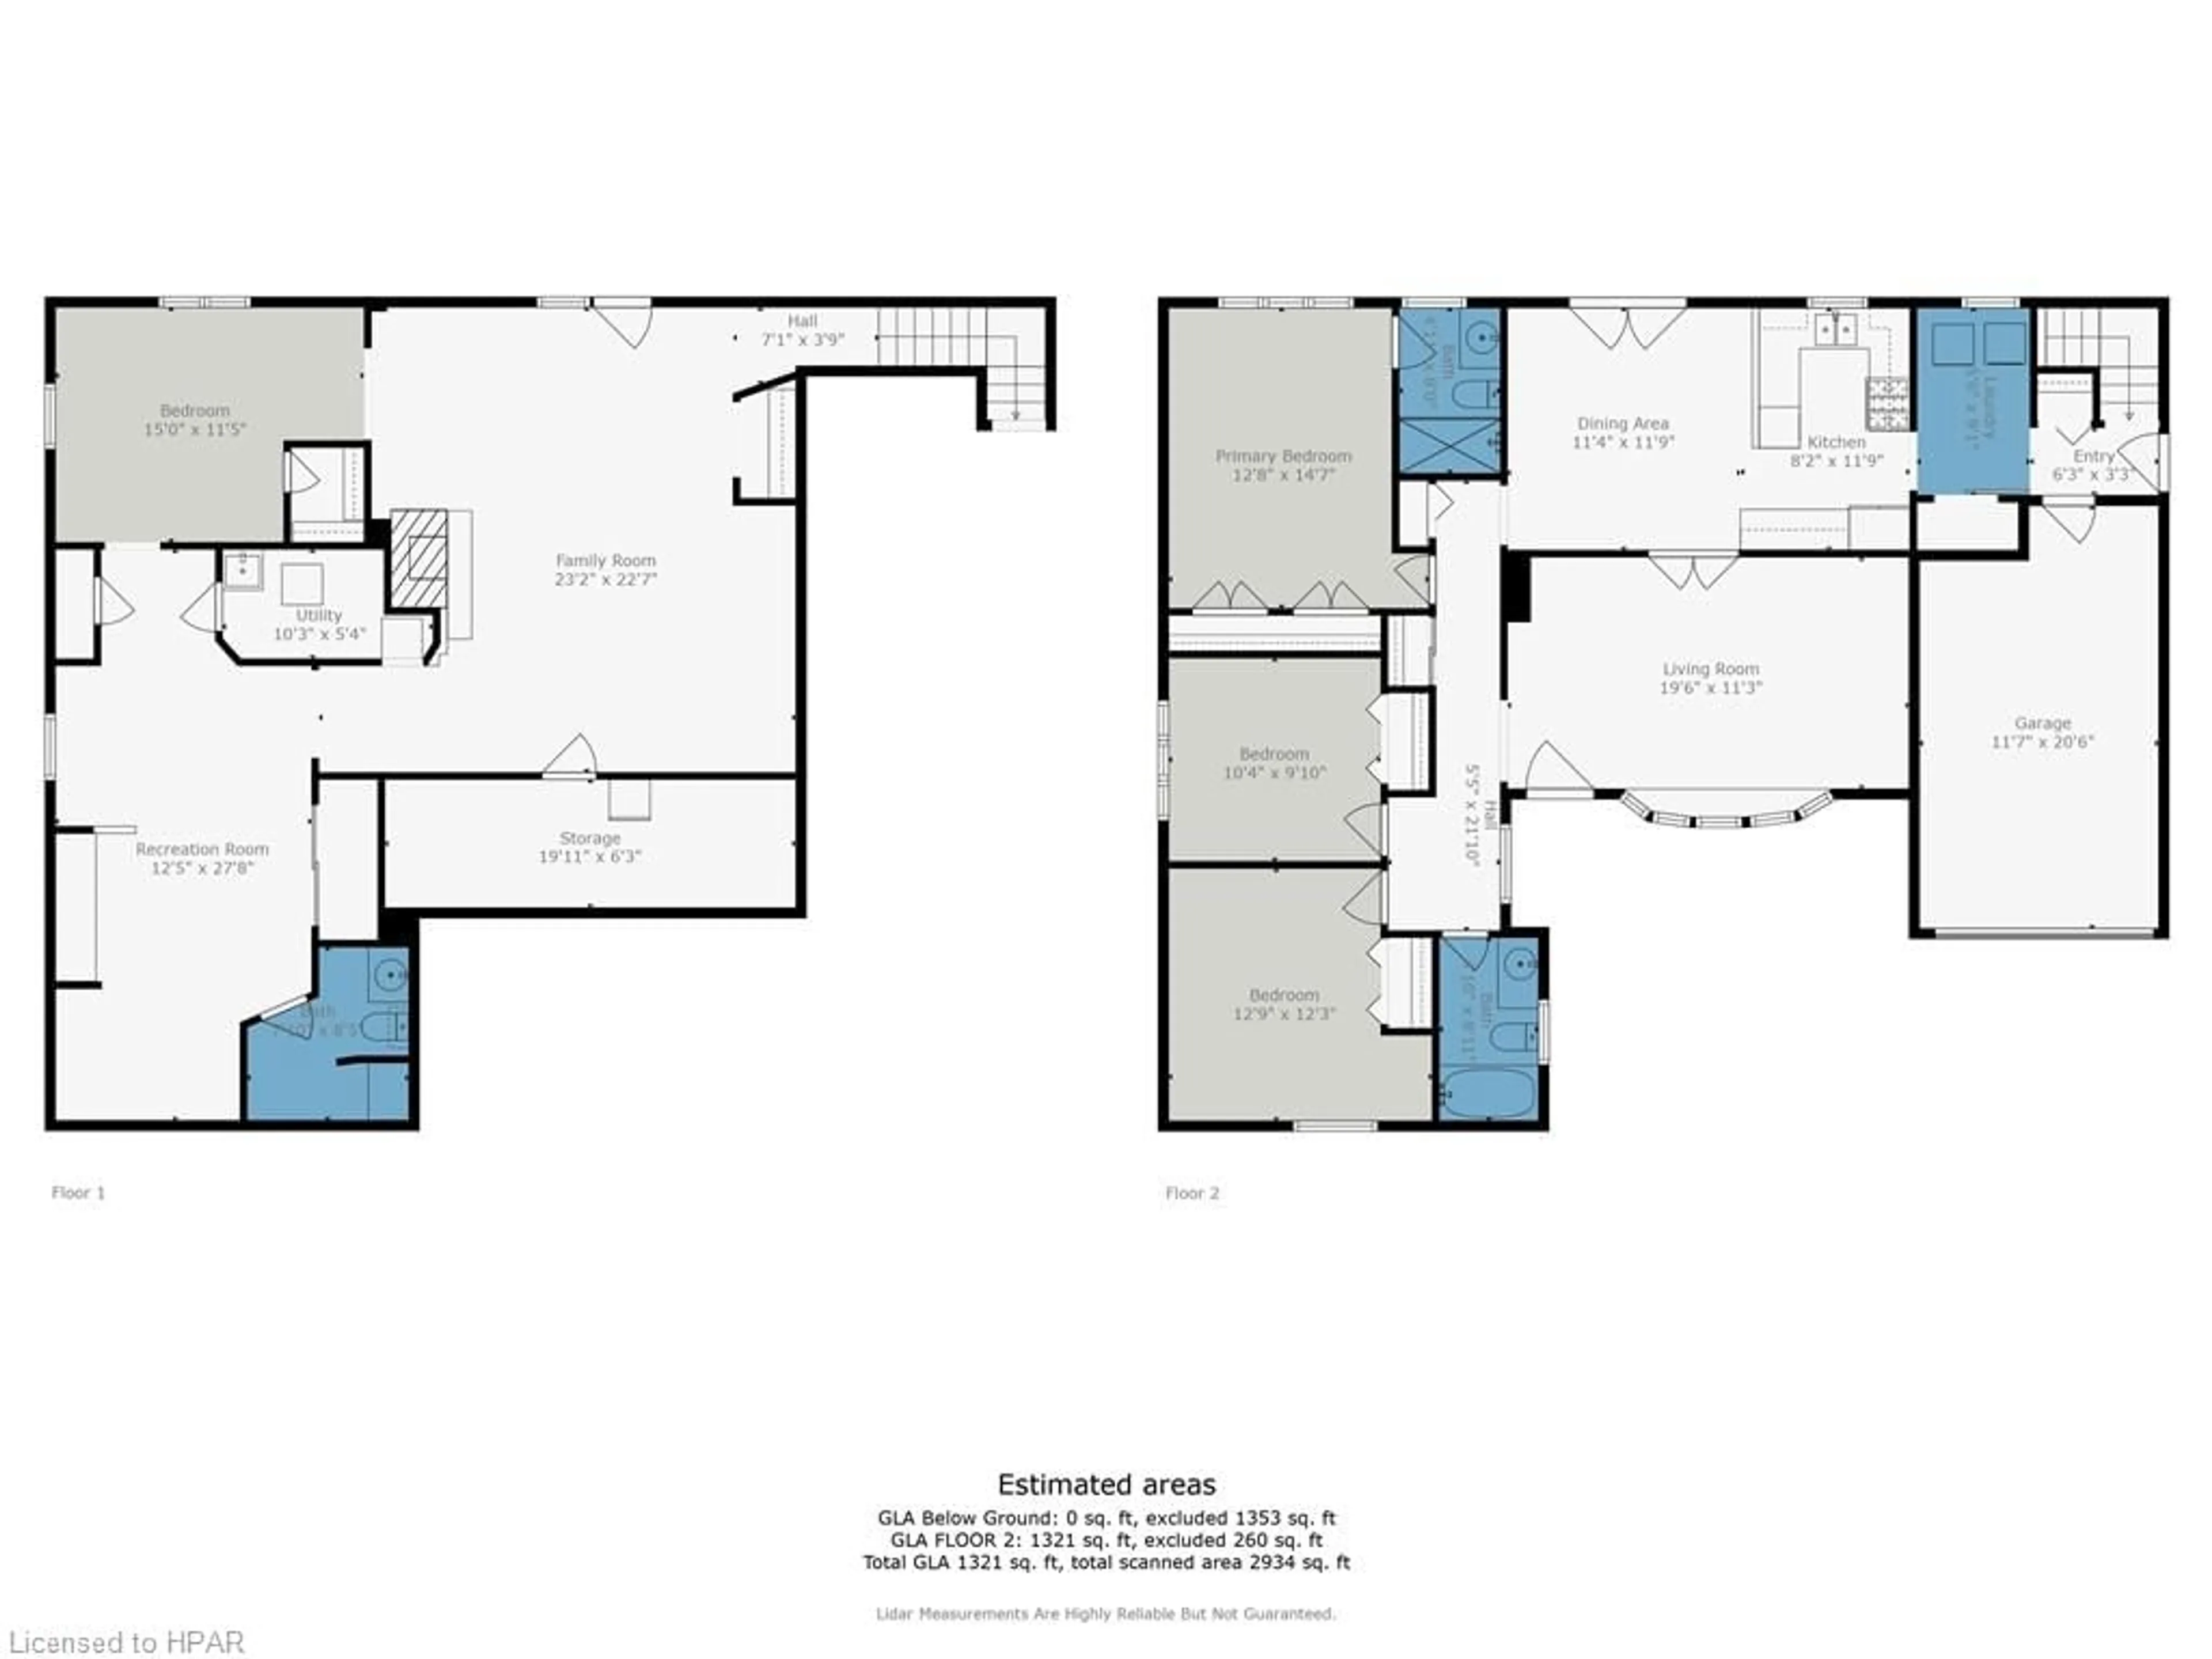 Floor plan for 348 Devon St, Stratford Ontario N5A 2Z9